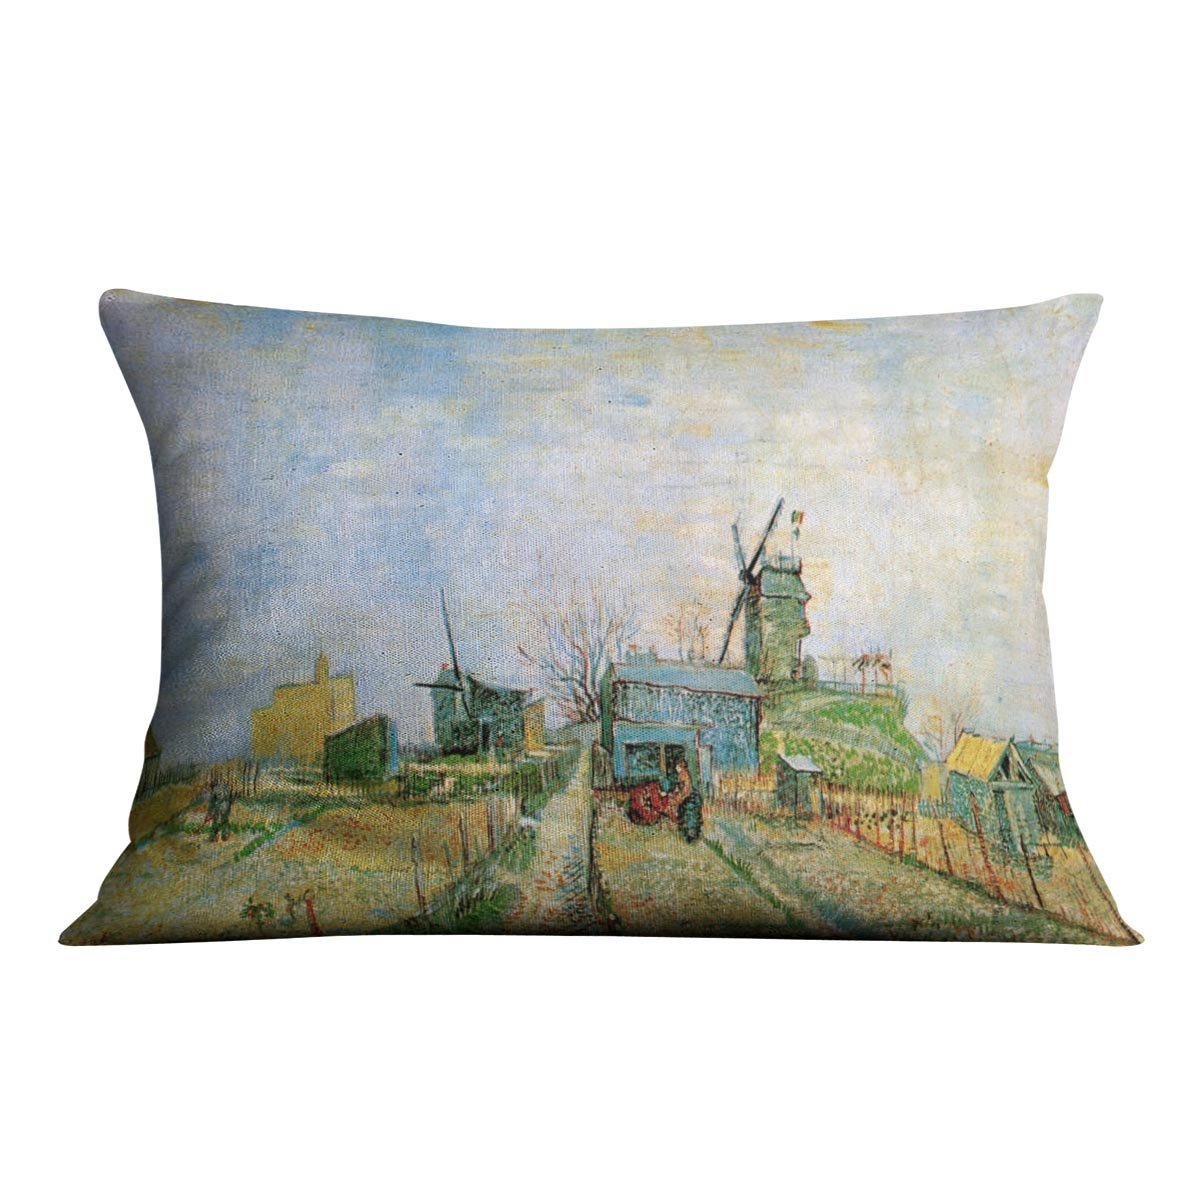 Vegetable Garden in Montmartre by Van Gogh Throw Pillow